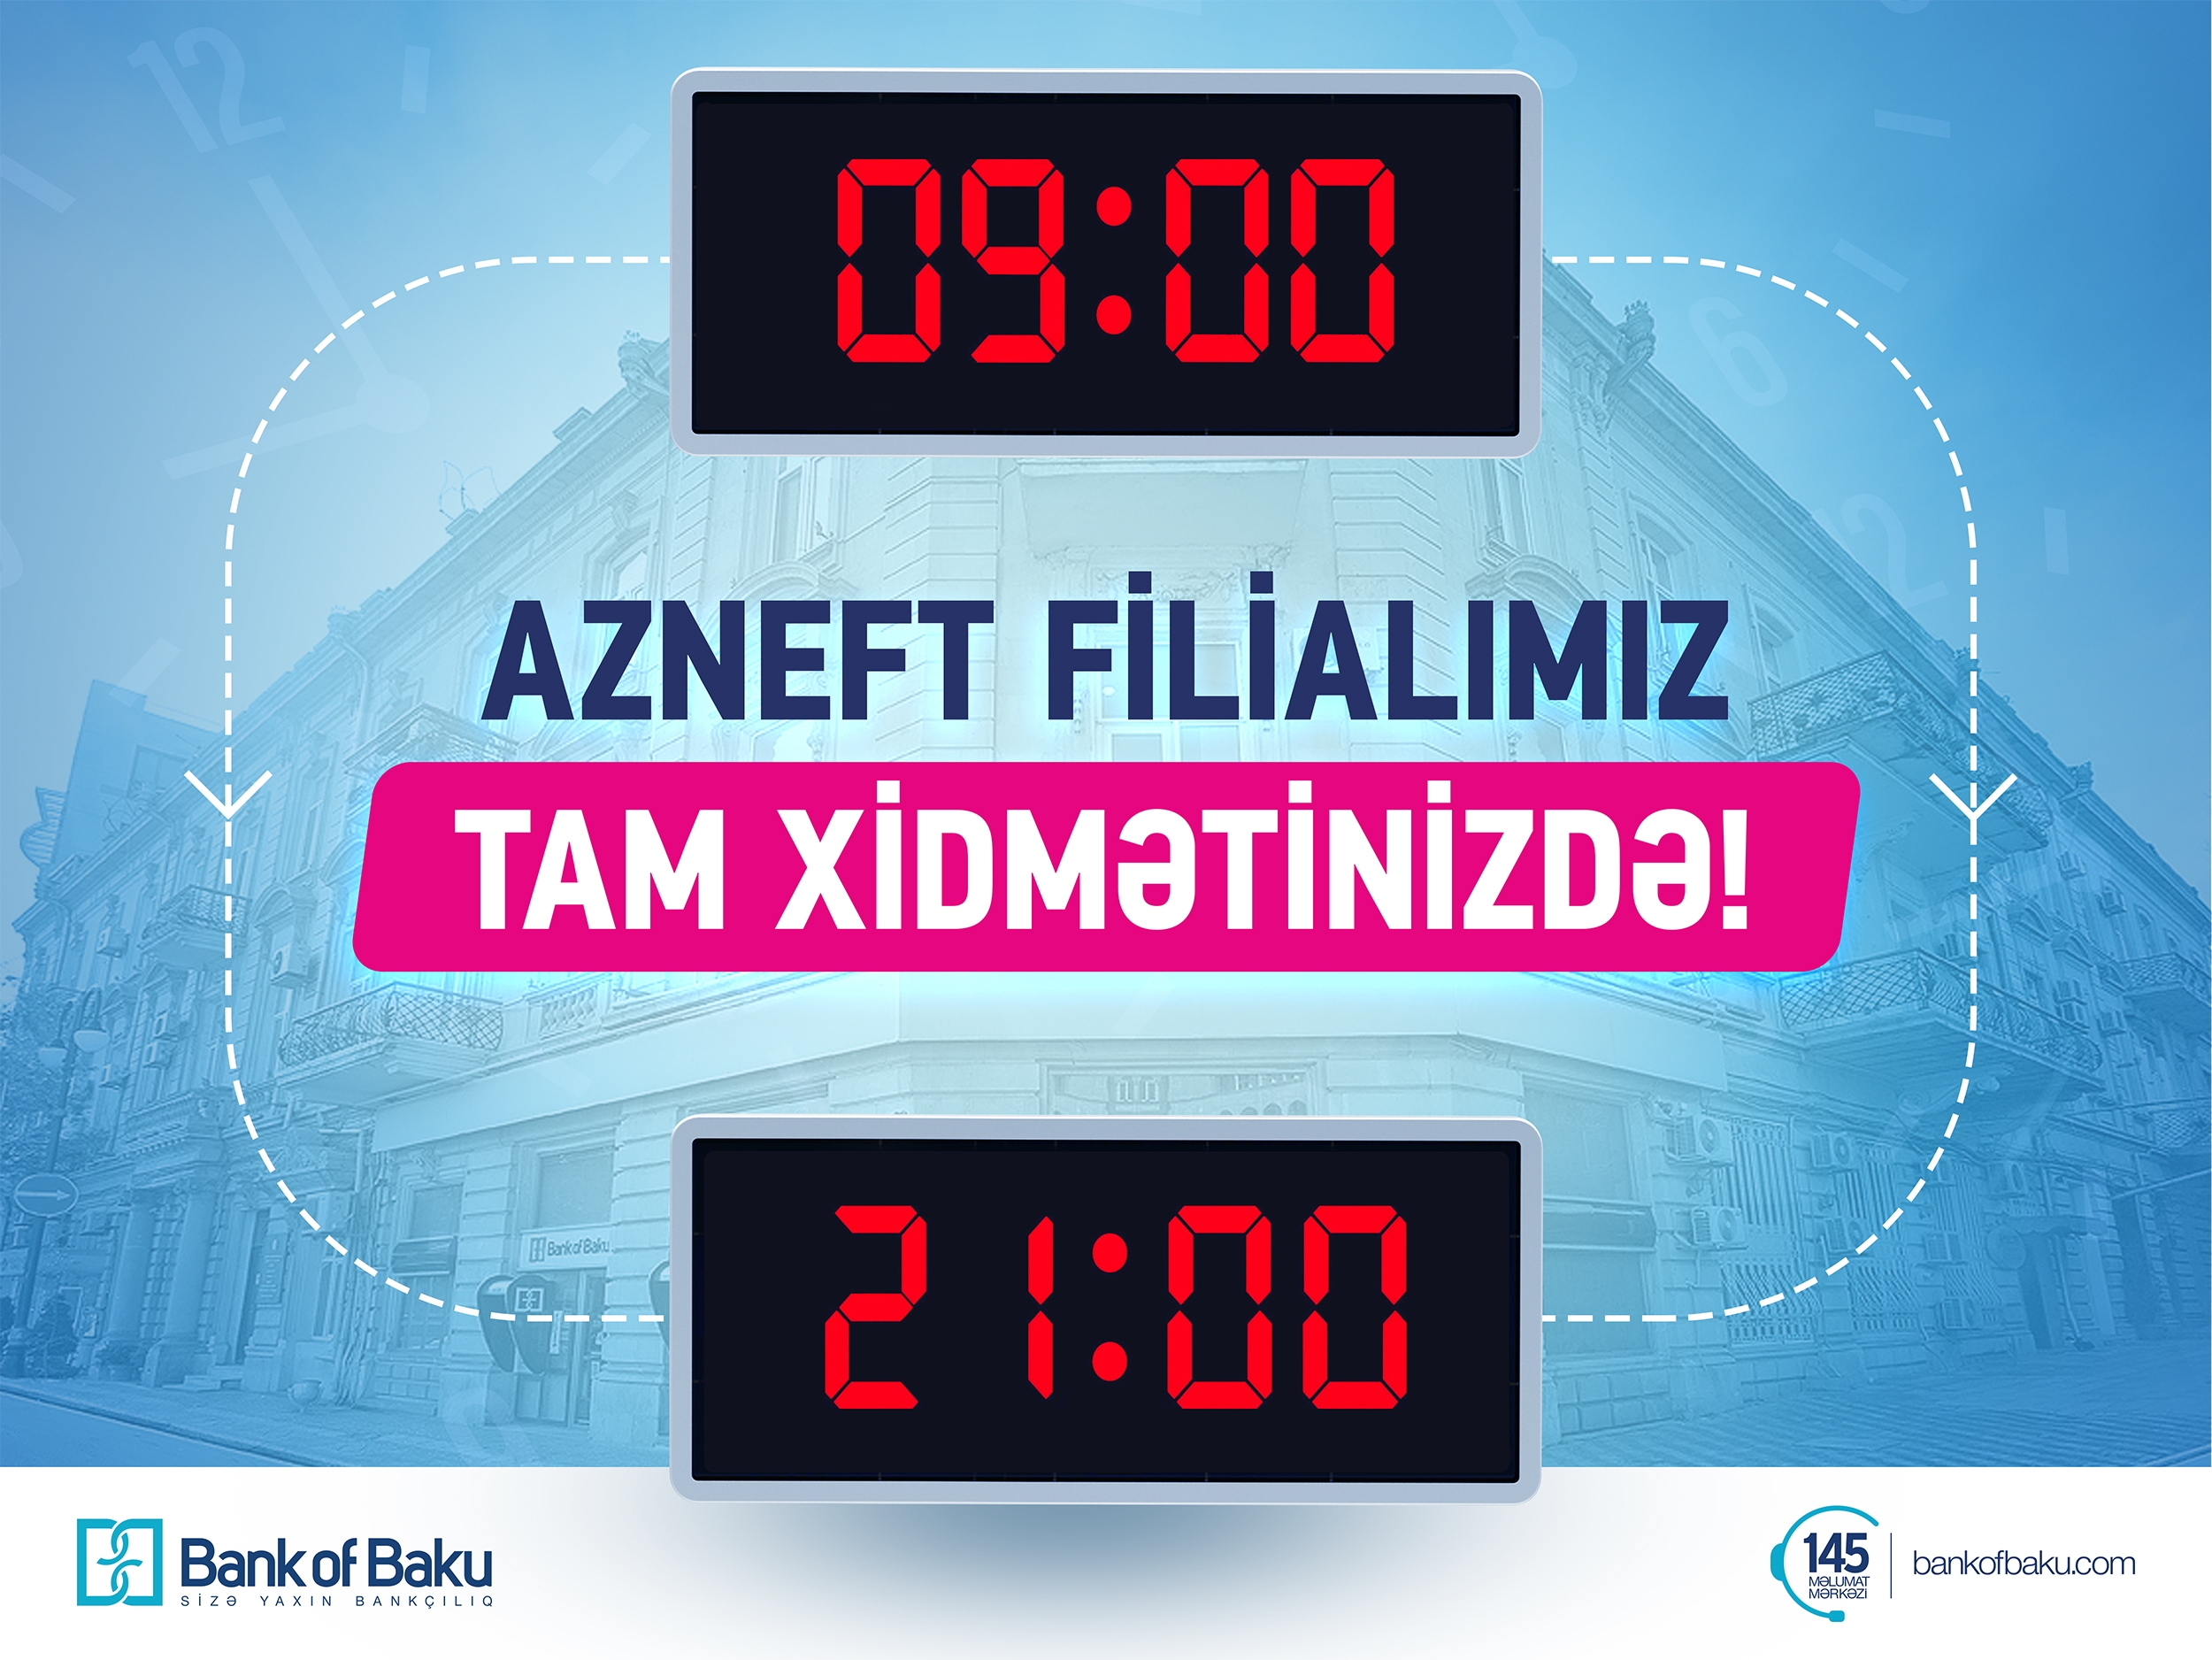 Bank of Baku-nun “Azneft” filialında 09:00-dan 21:00-a tam xidmət!